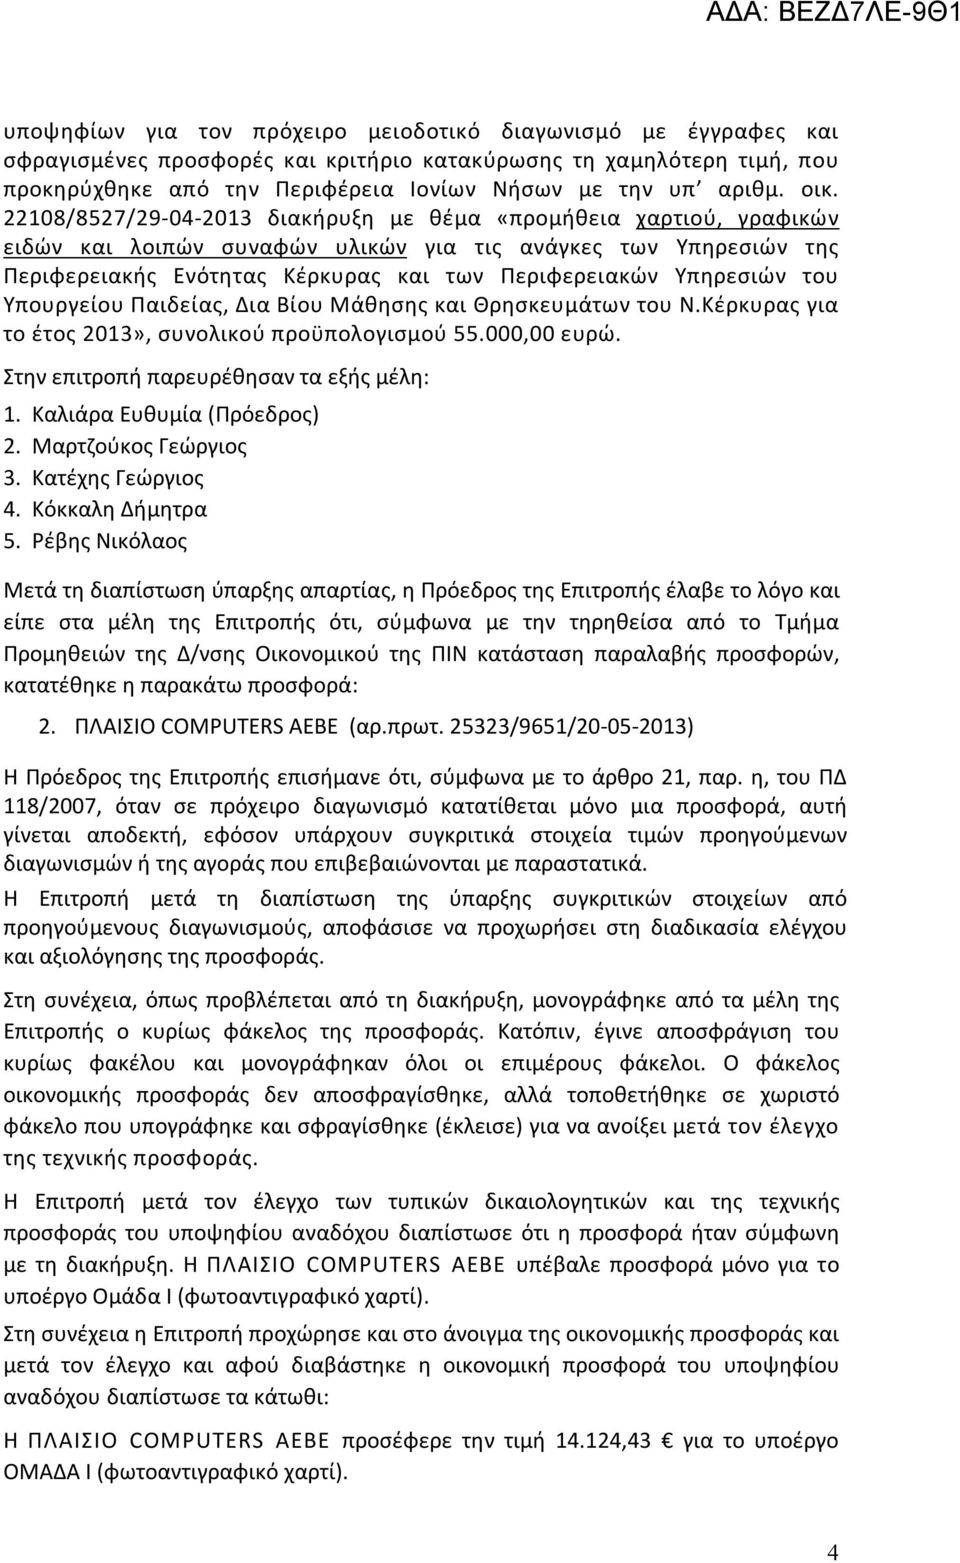 Υπηρεσιών του Υπουργείου Παιδείας, Δια Βίου Μάθησης και Θρησκευμάτων του Ν.Κέρκυρας για το έτος 2013», συνολικού προϋπολογισμού 55.000,00 ευρώ. Στην επιτροπή παρευρέθησαν τα εξής μέλη: 1.